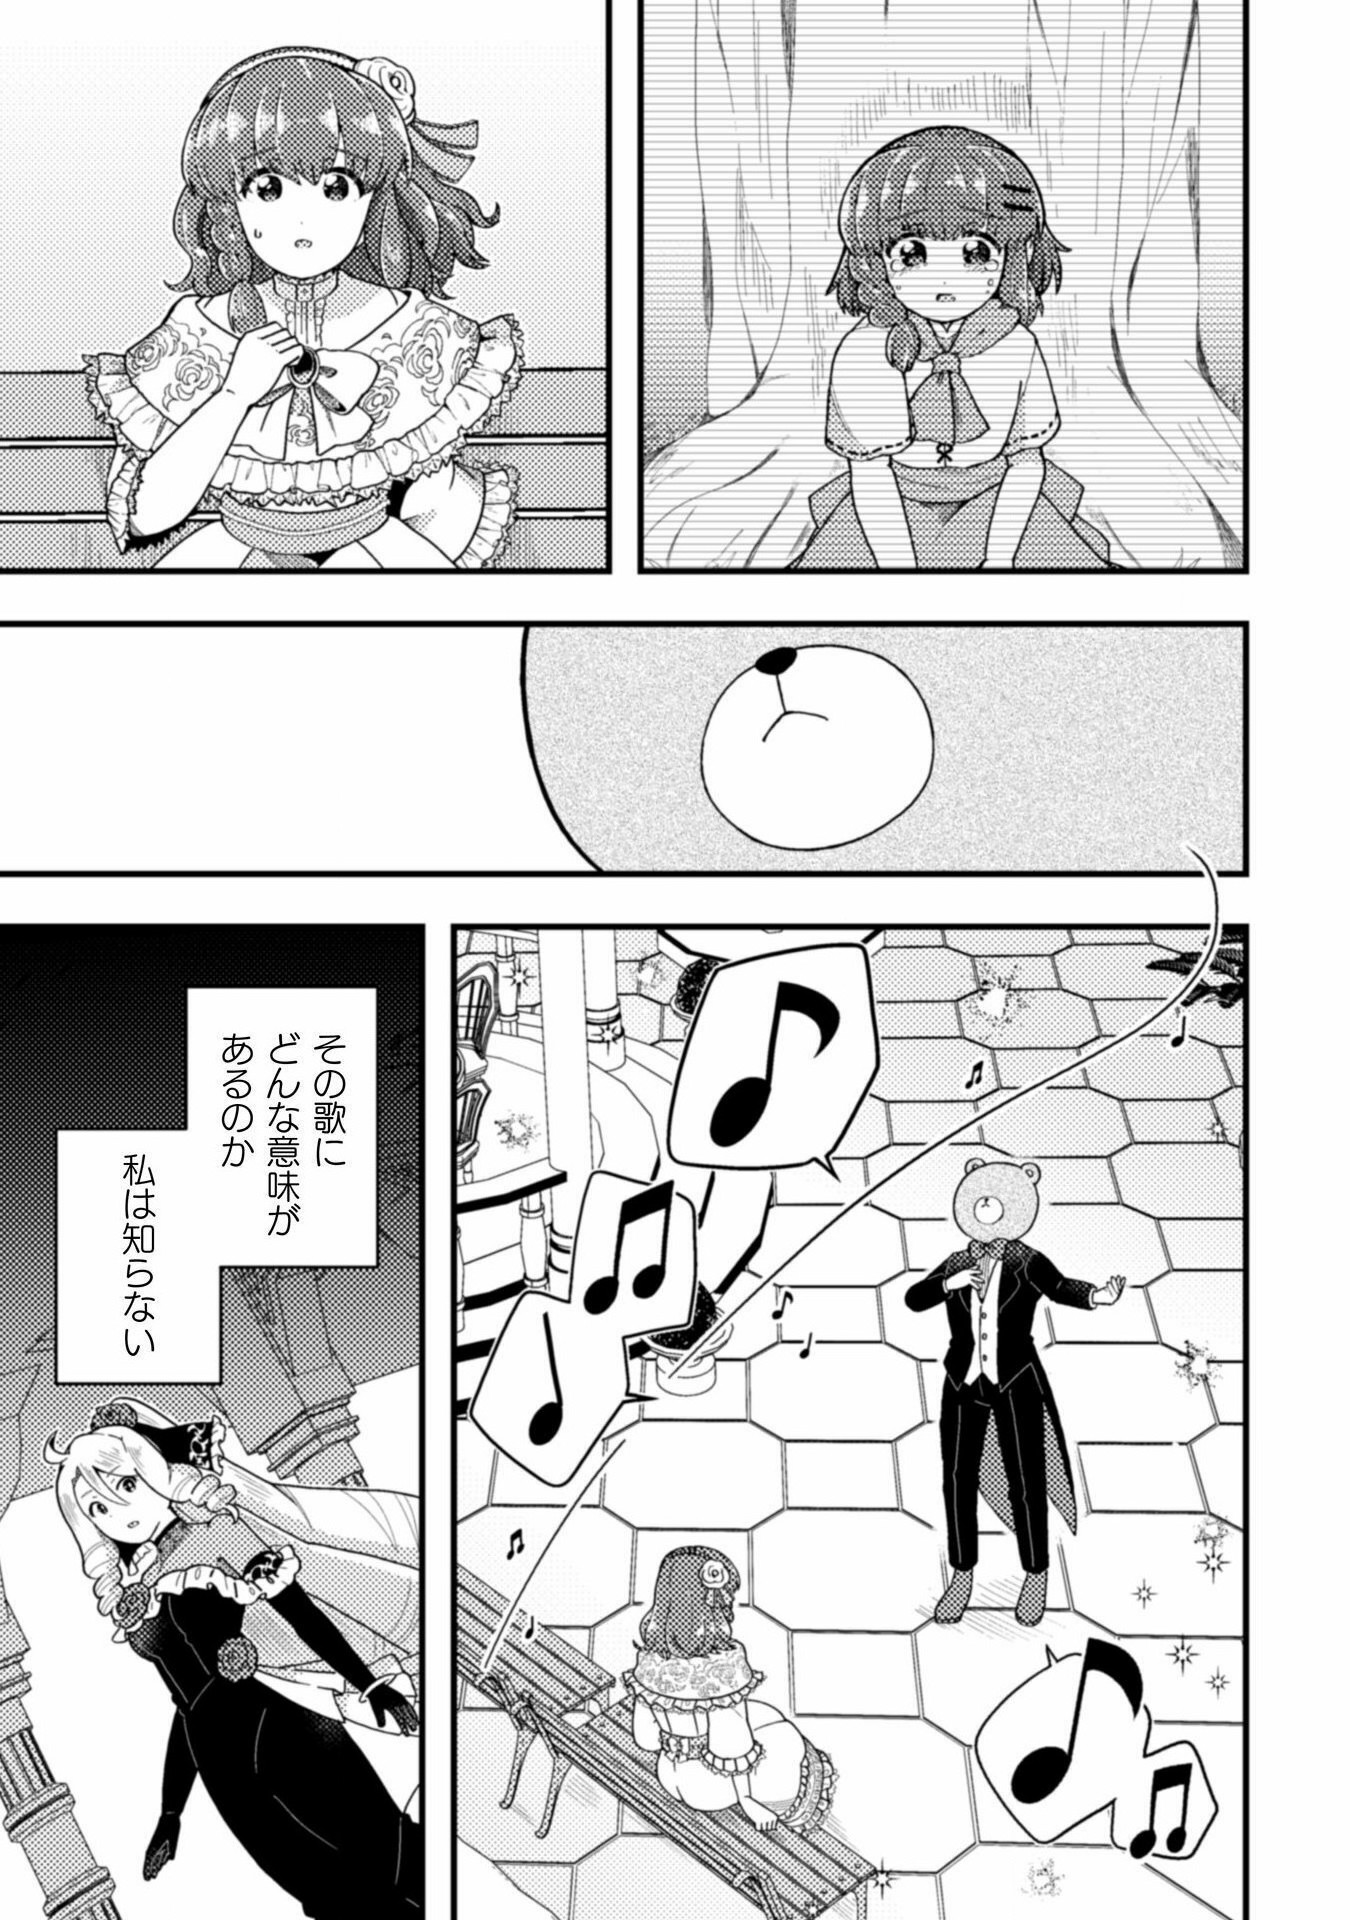 Otome Game no Akuyaku Reijou ni Tensei shitakedo Follower ga Fukyoushiteta Chisiki shikanai - Chapter 19 - Page 23